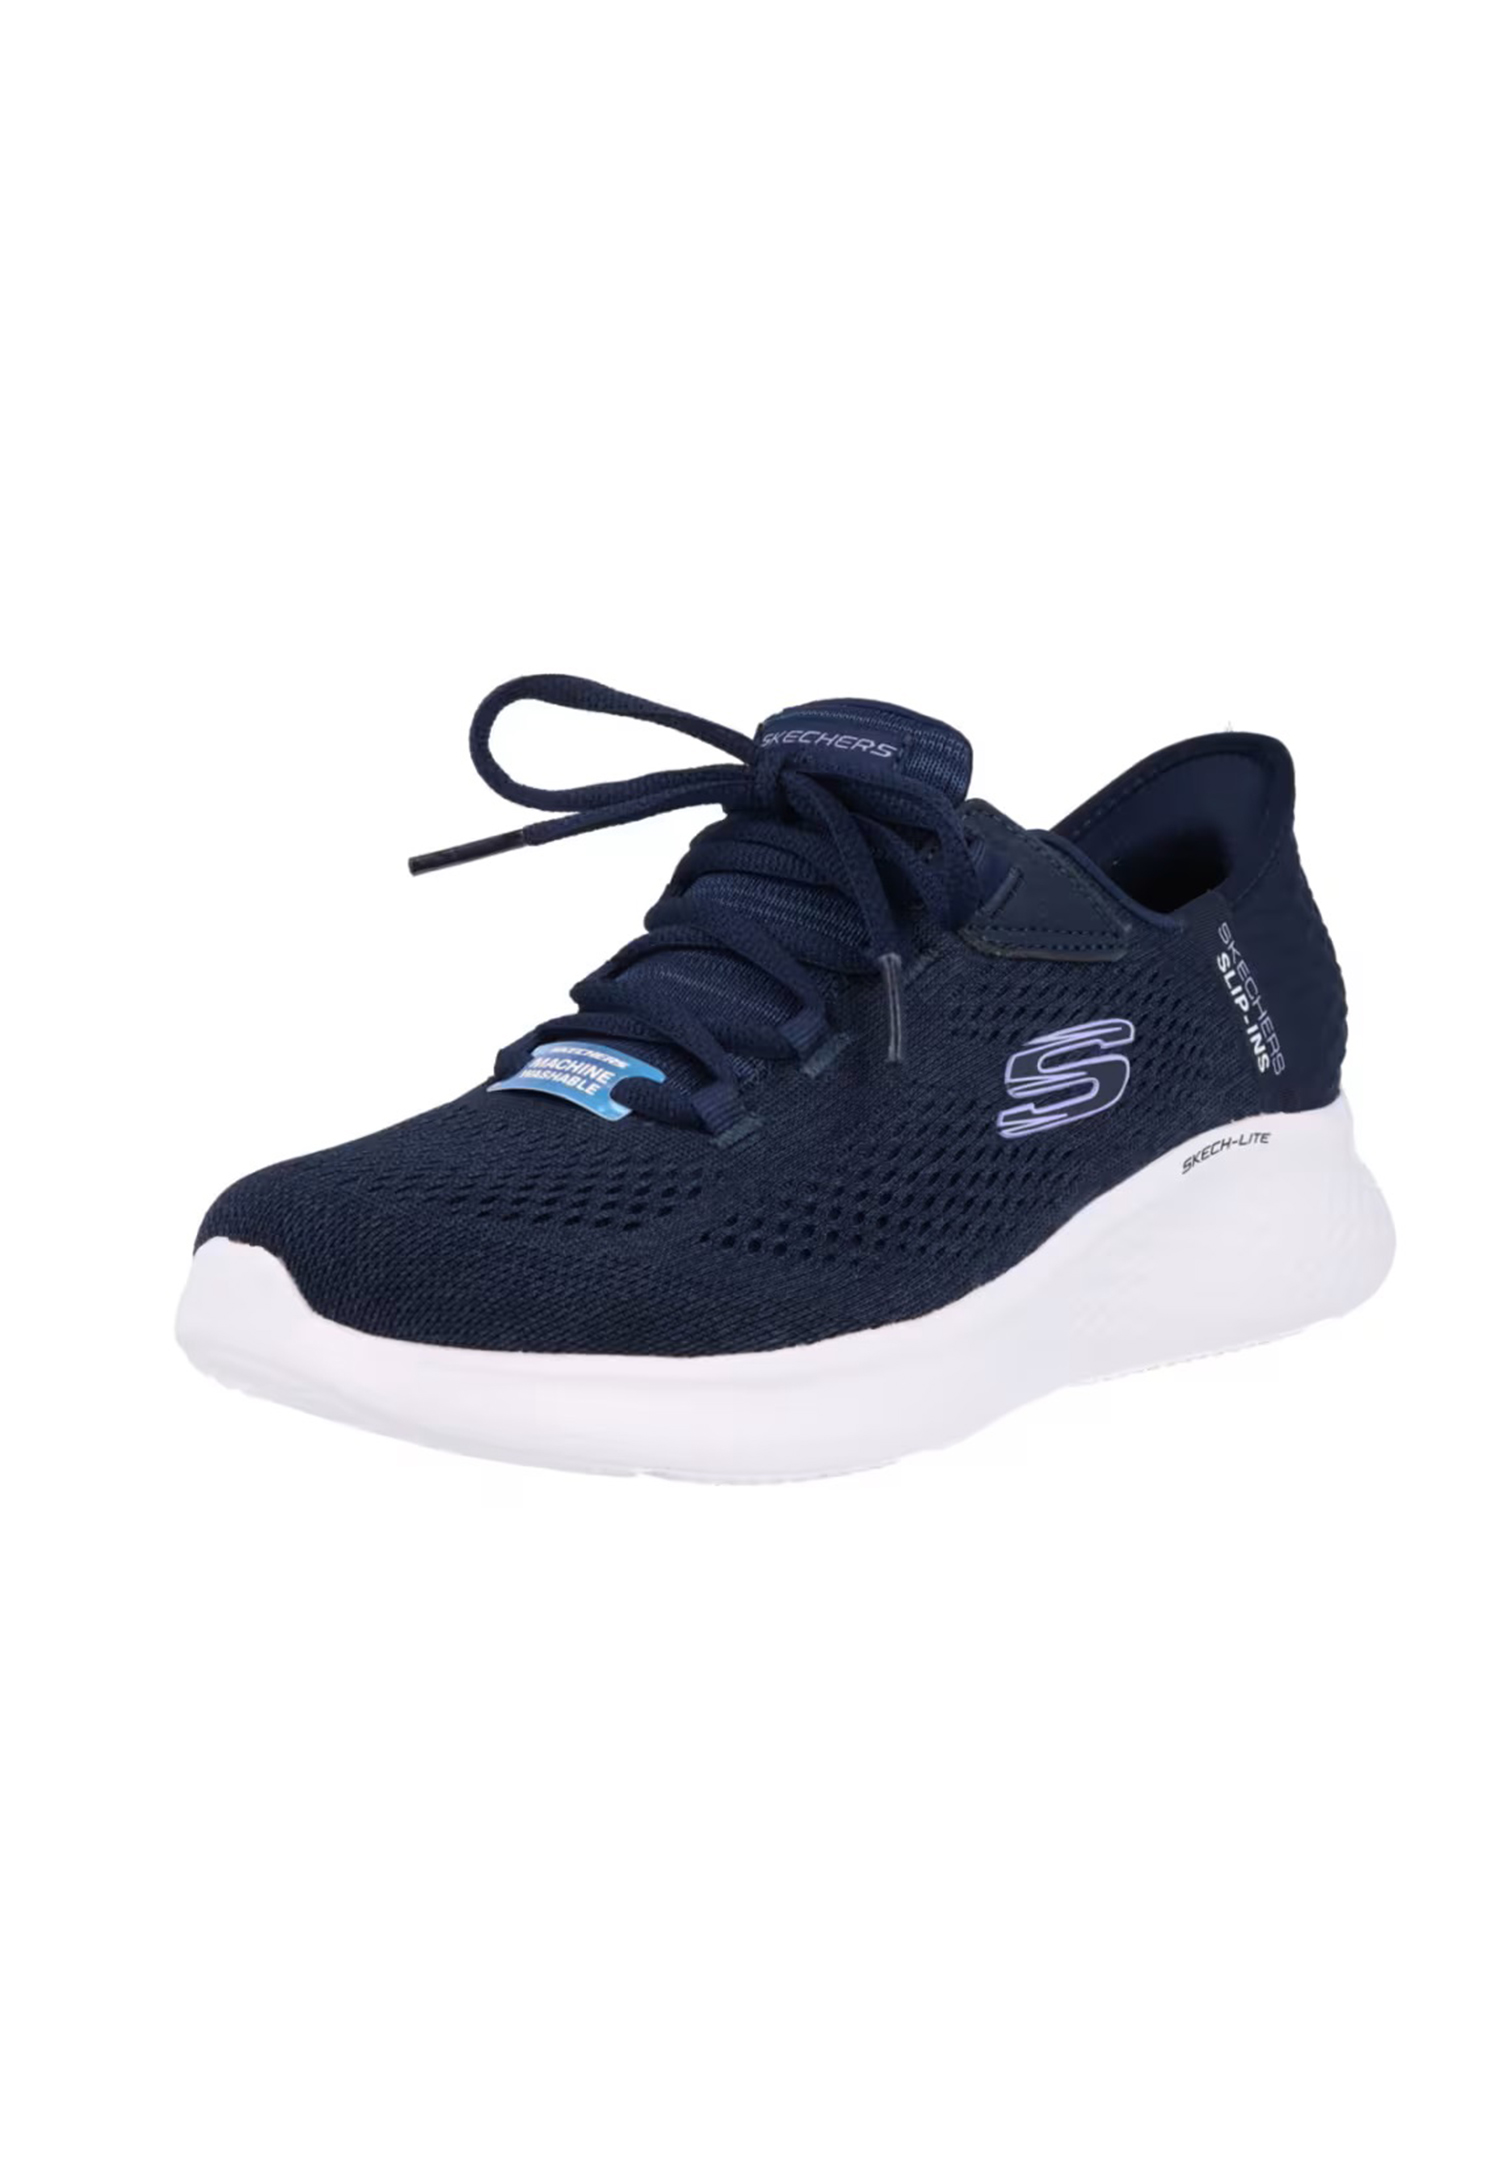 Skechers Skech-Lite Pro - NATURAL BEAUTY Damen Sneaker Slip-ins 150012 NVLV blau